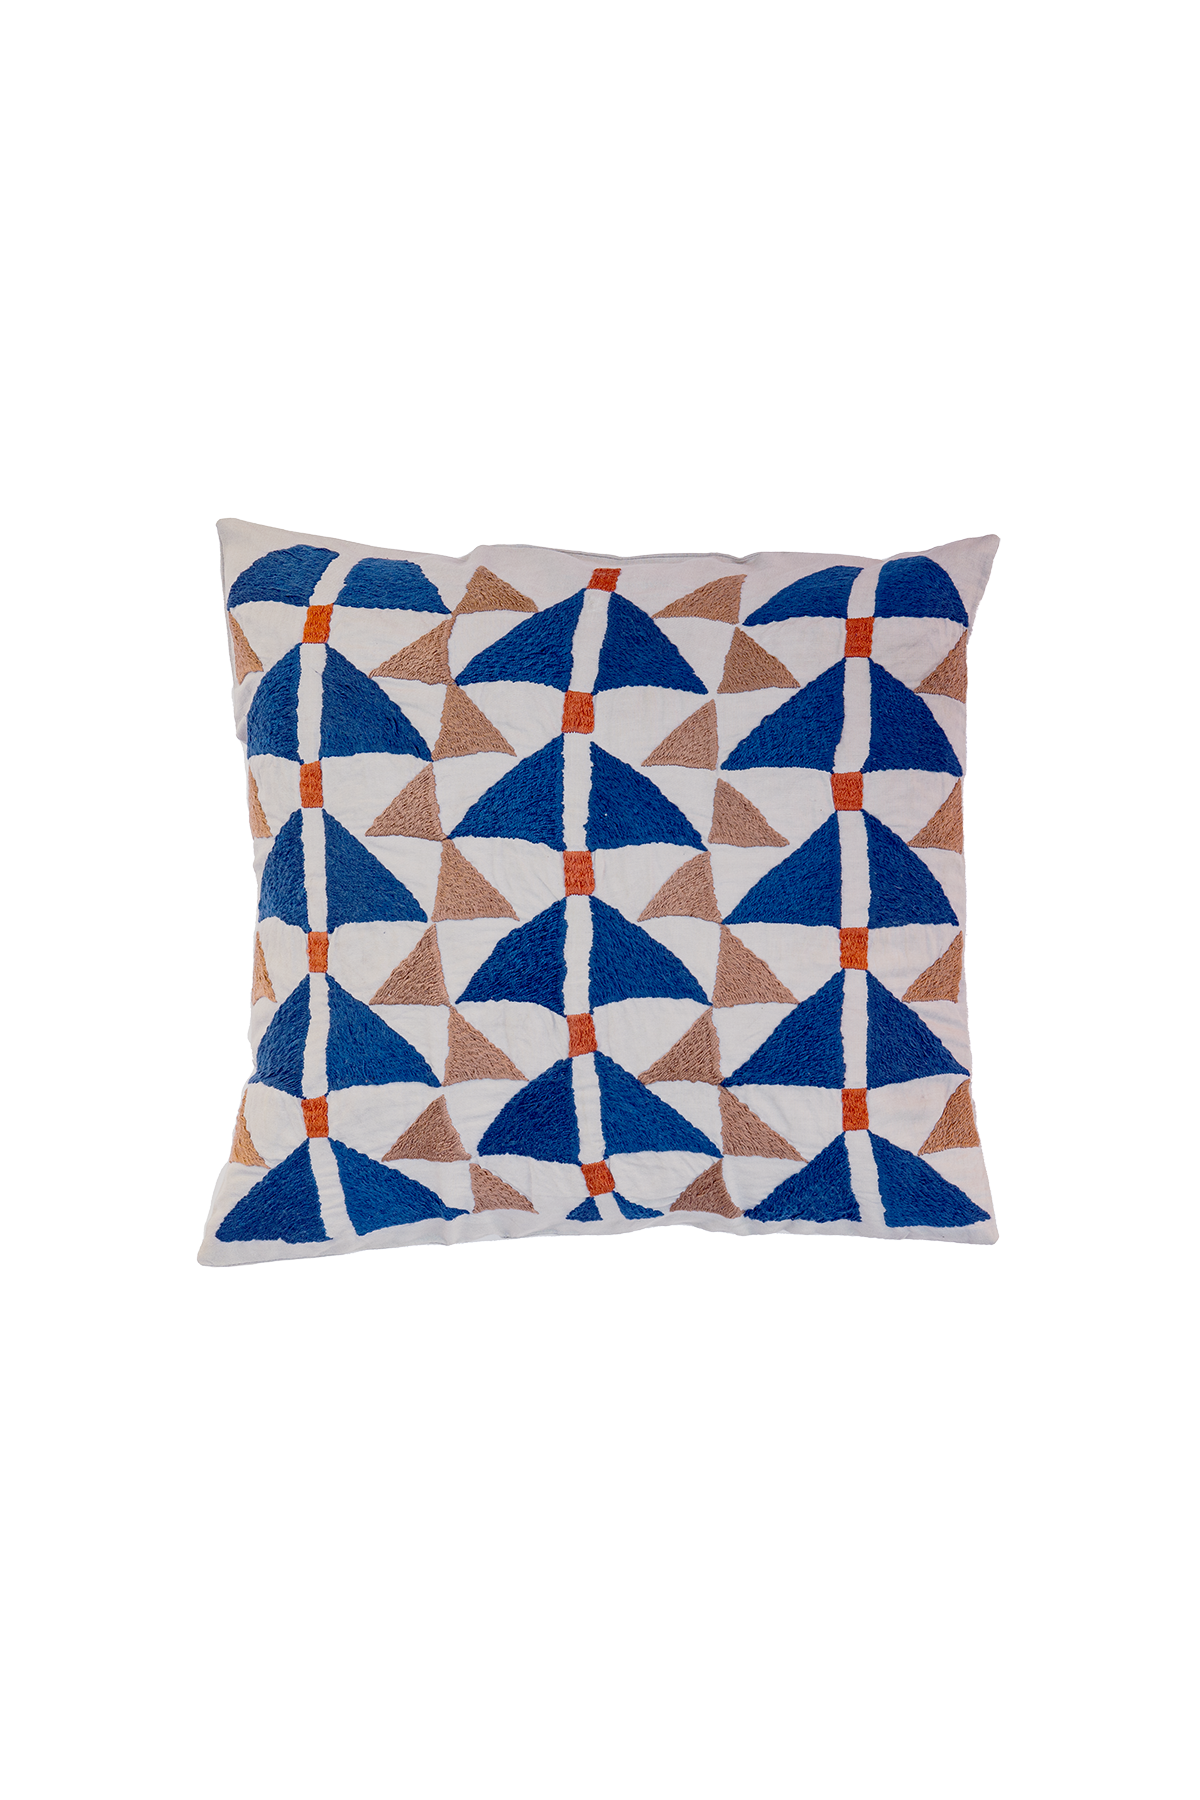 Square Puktadozi Triangle Cushion